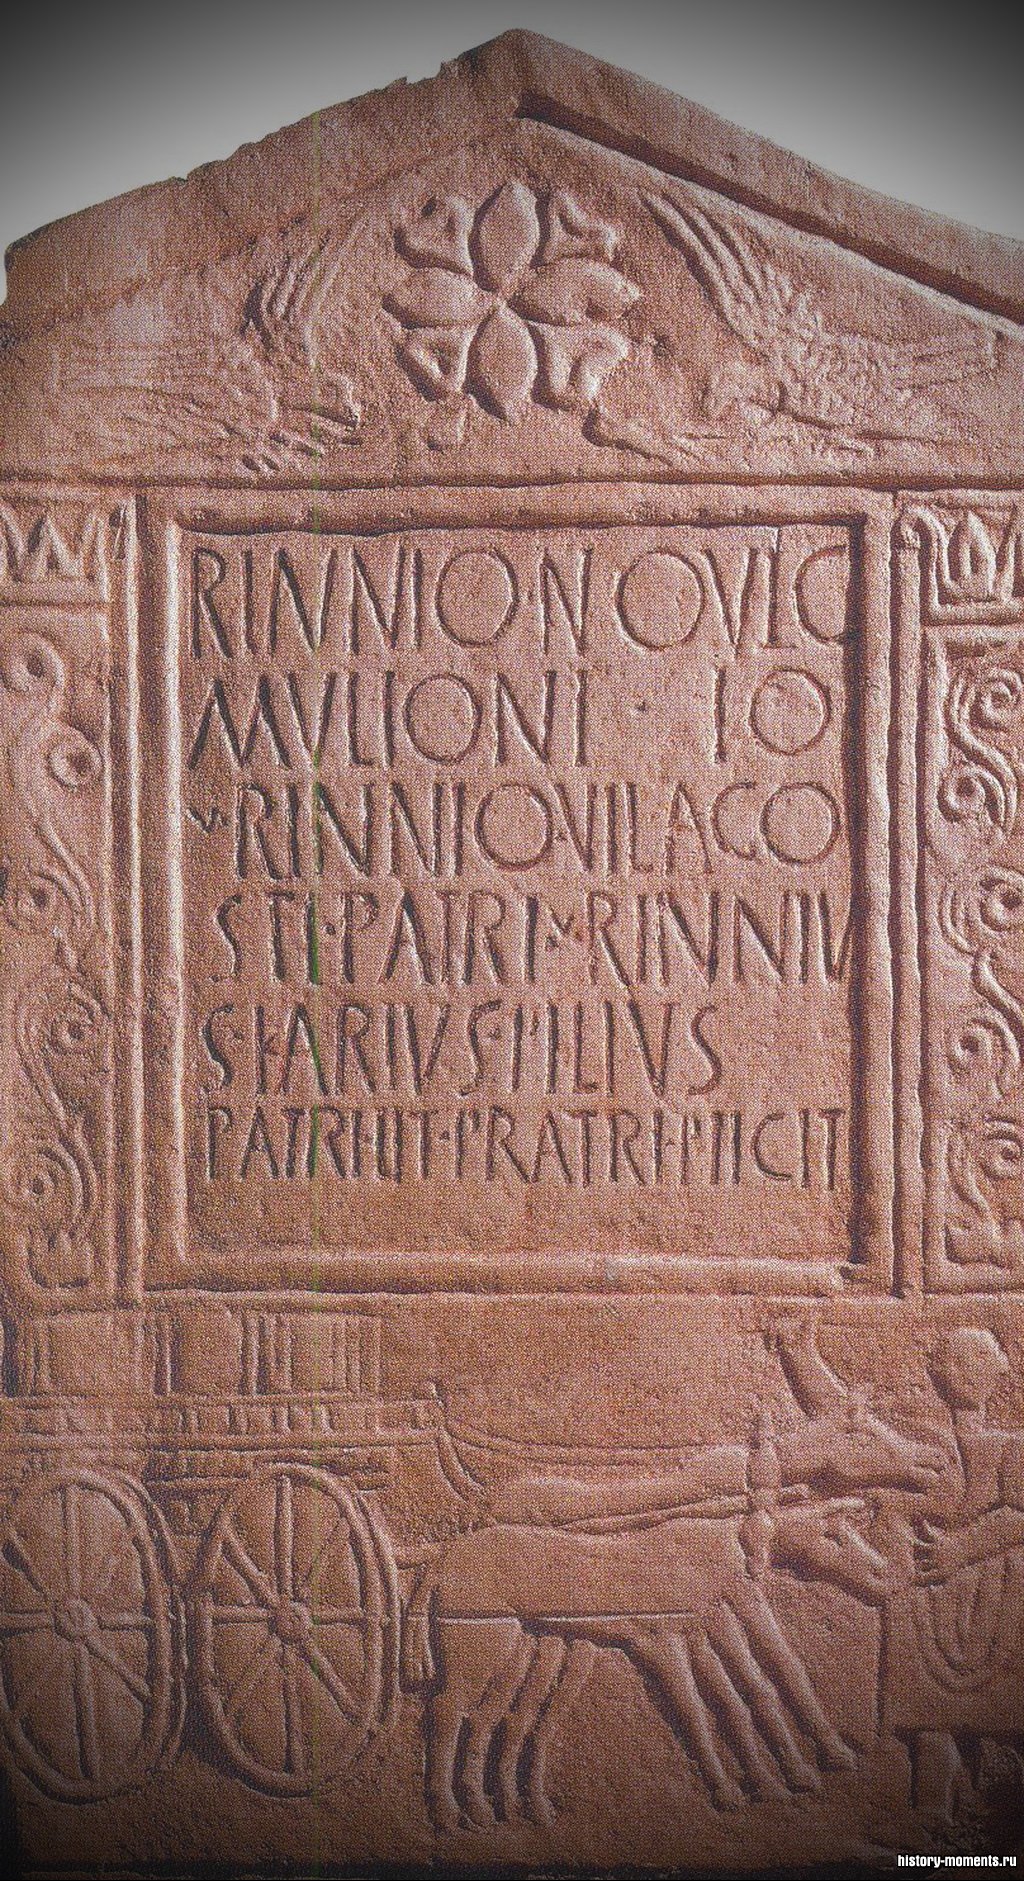 Латинские надписи начертаны на фасадах римских зданий, памятниках и гробницах. Вот надпись на могильном камне: «Риннию Новицию, погонщику мулов».